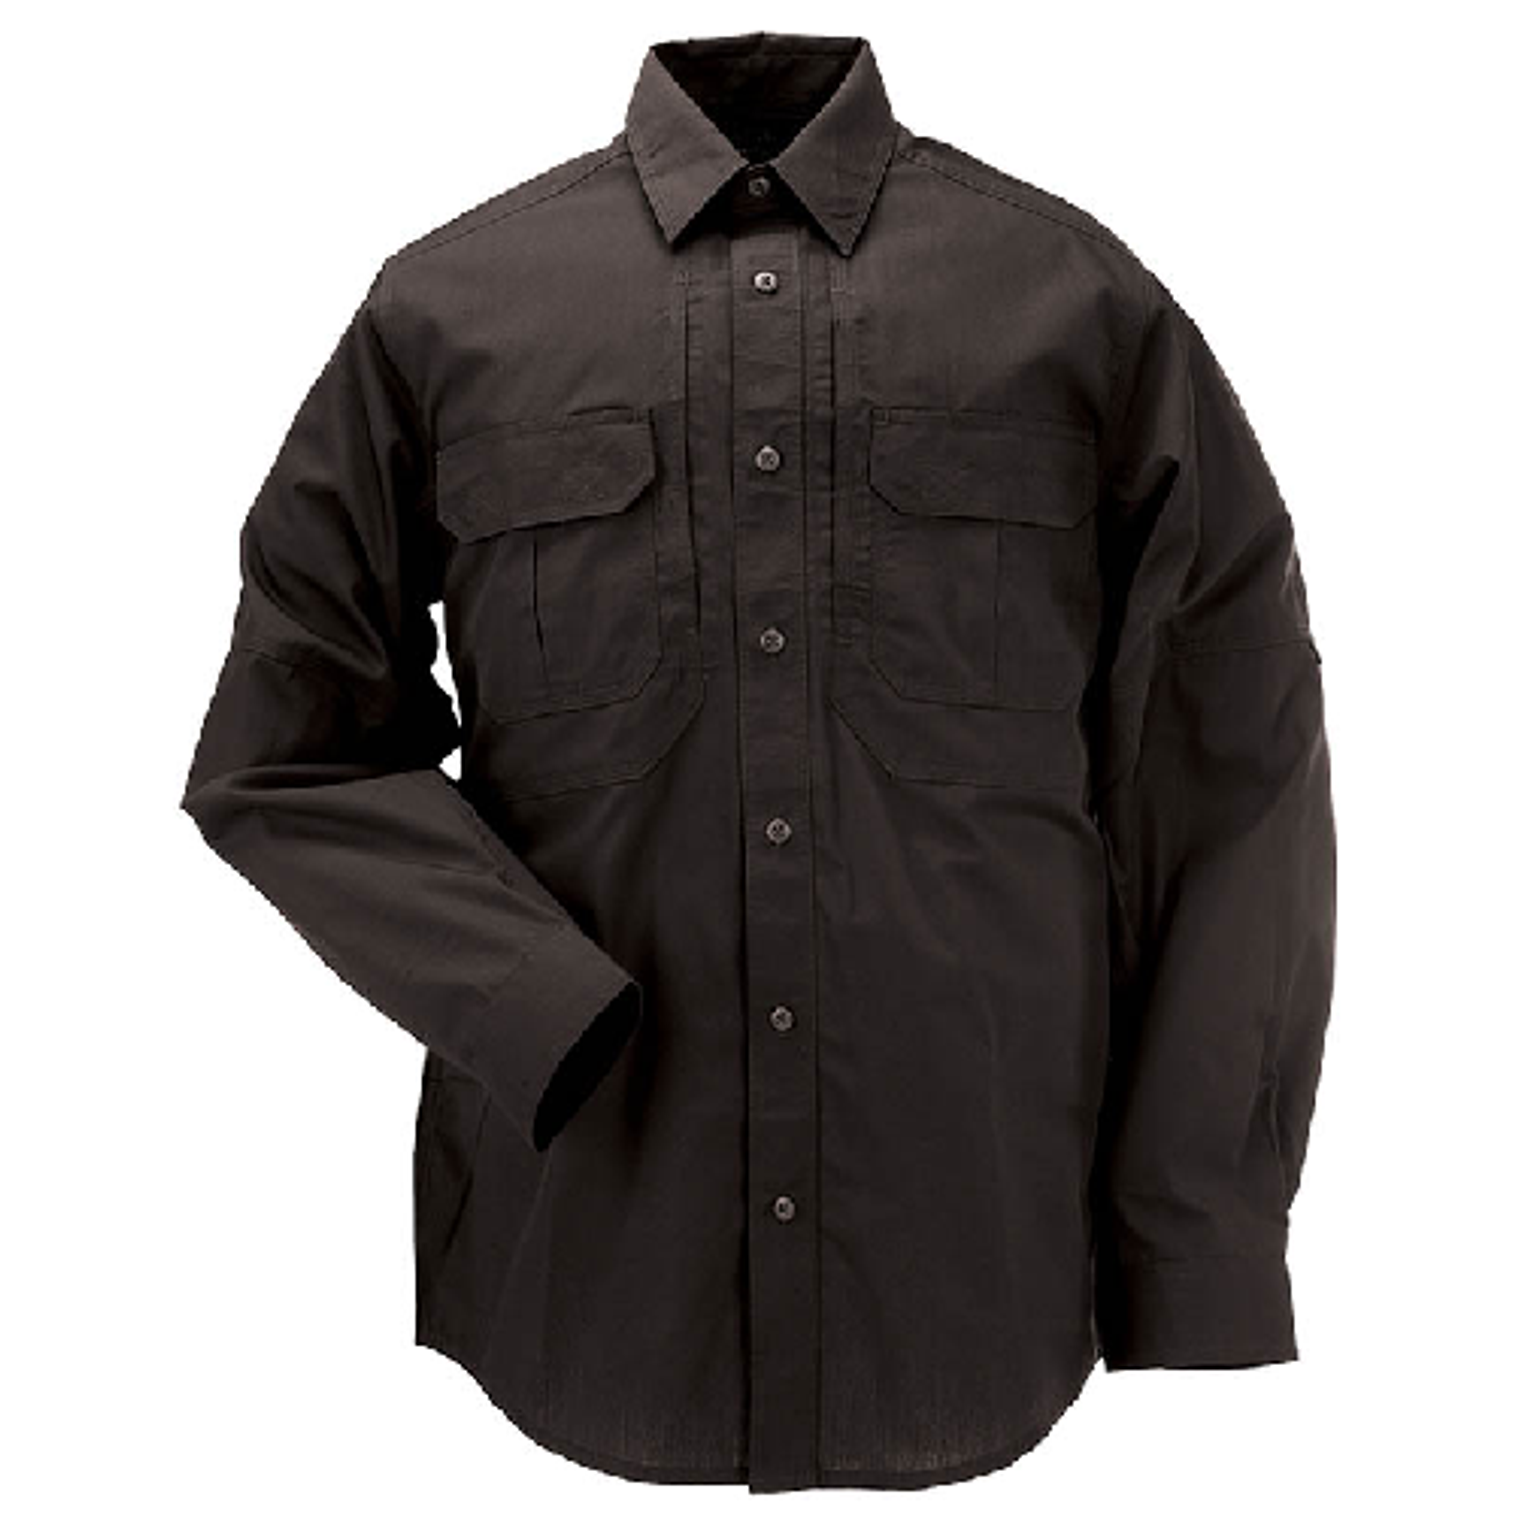 Taclite Pro L/s Shirt - KR5-72175019M